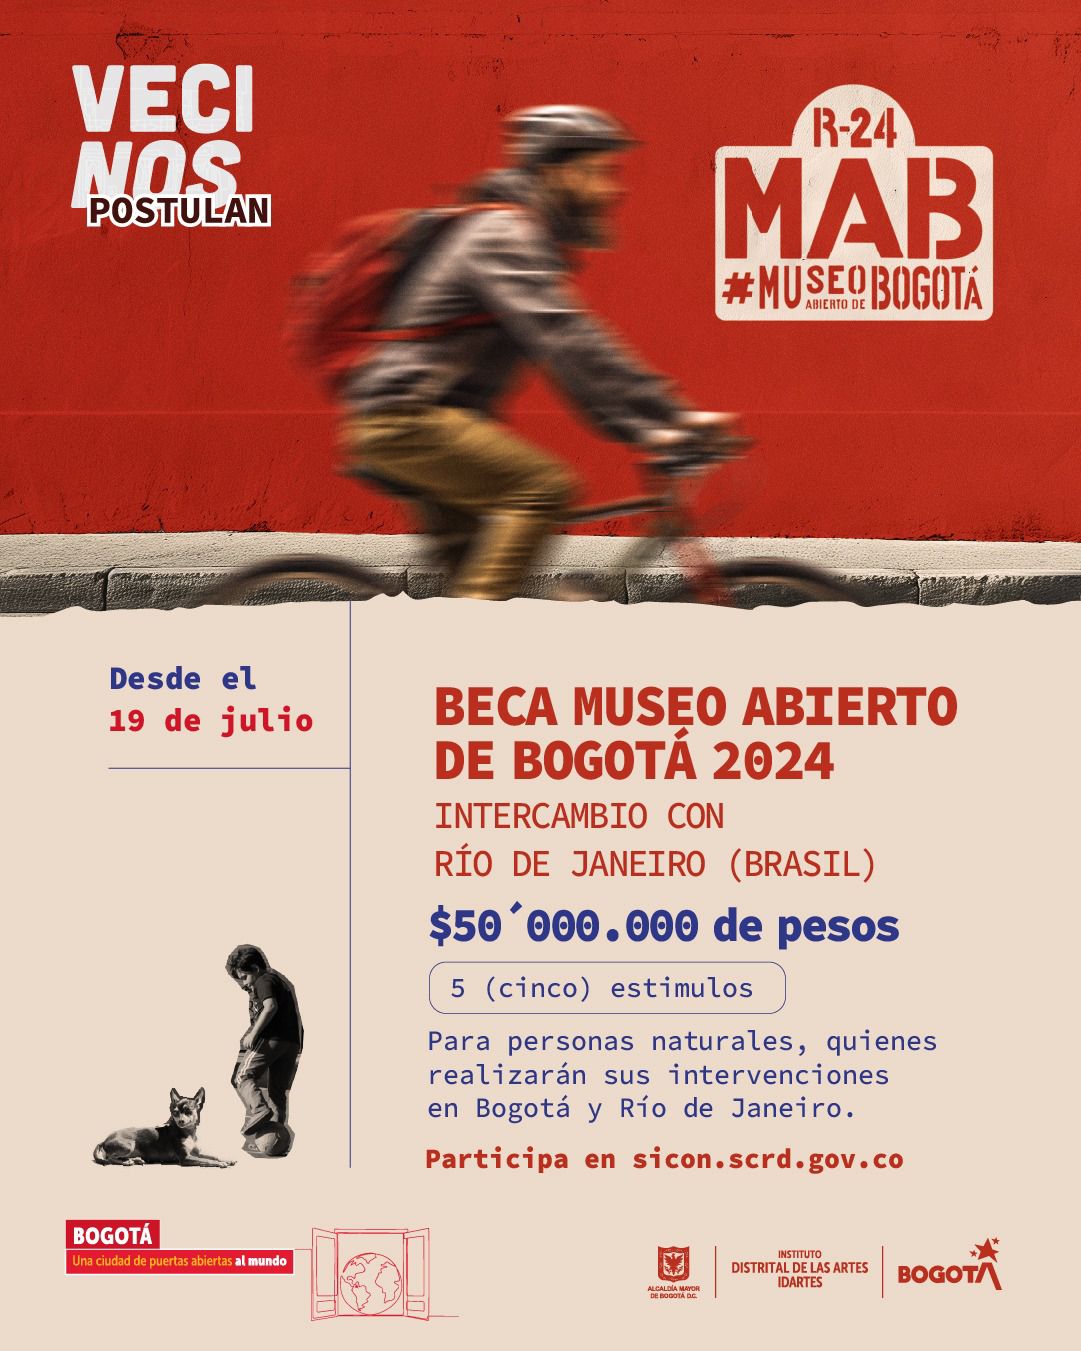 Museo Abierto de Bogotá - MAB